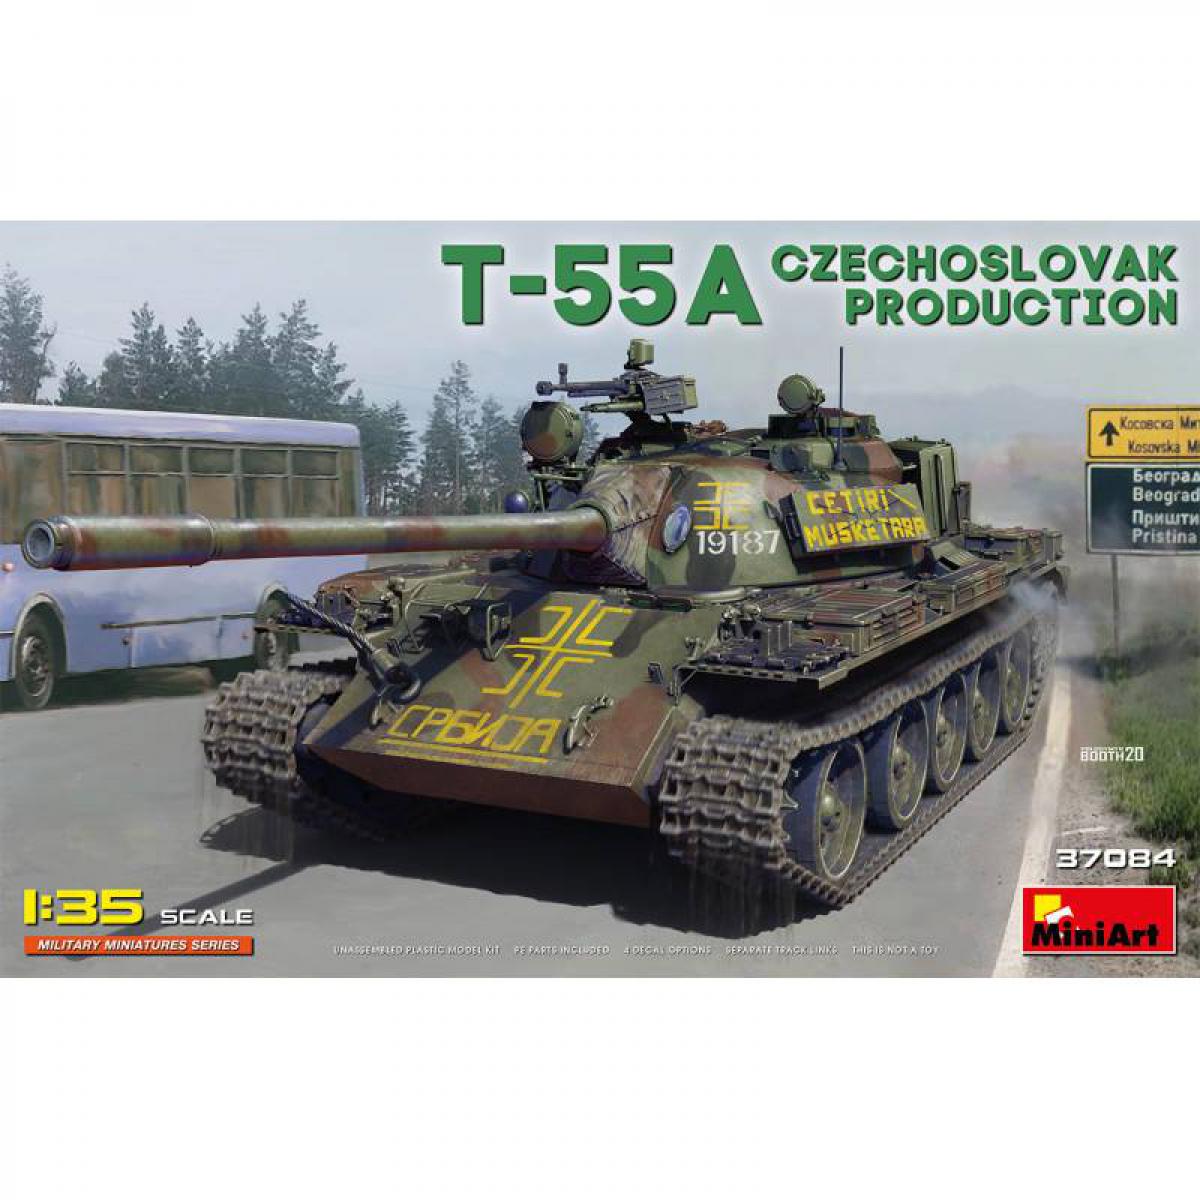 Mini Art - Maquette Char T-55a Czechoslovak Production - Chars